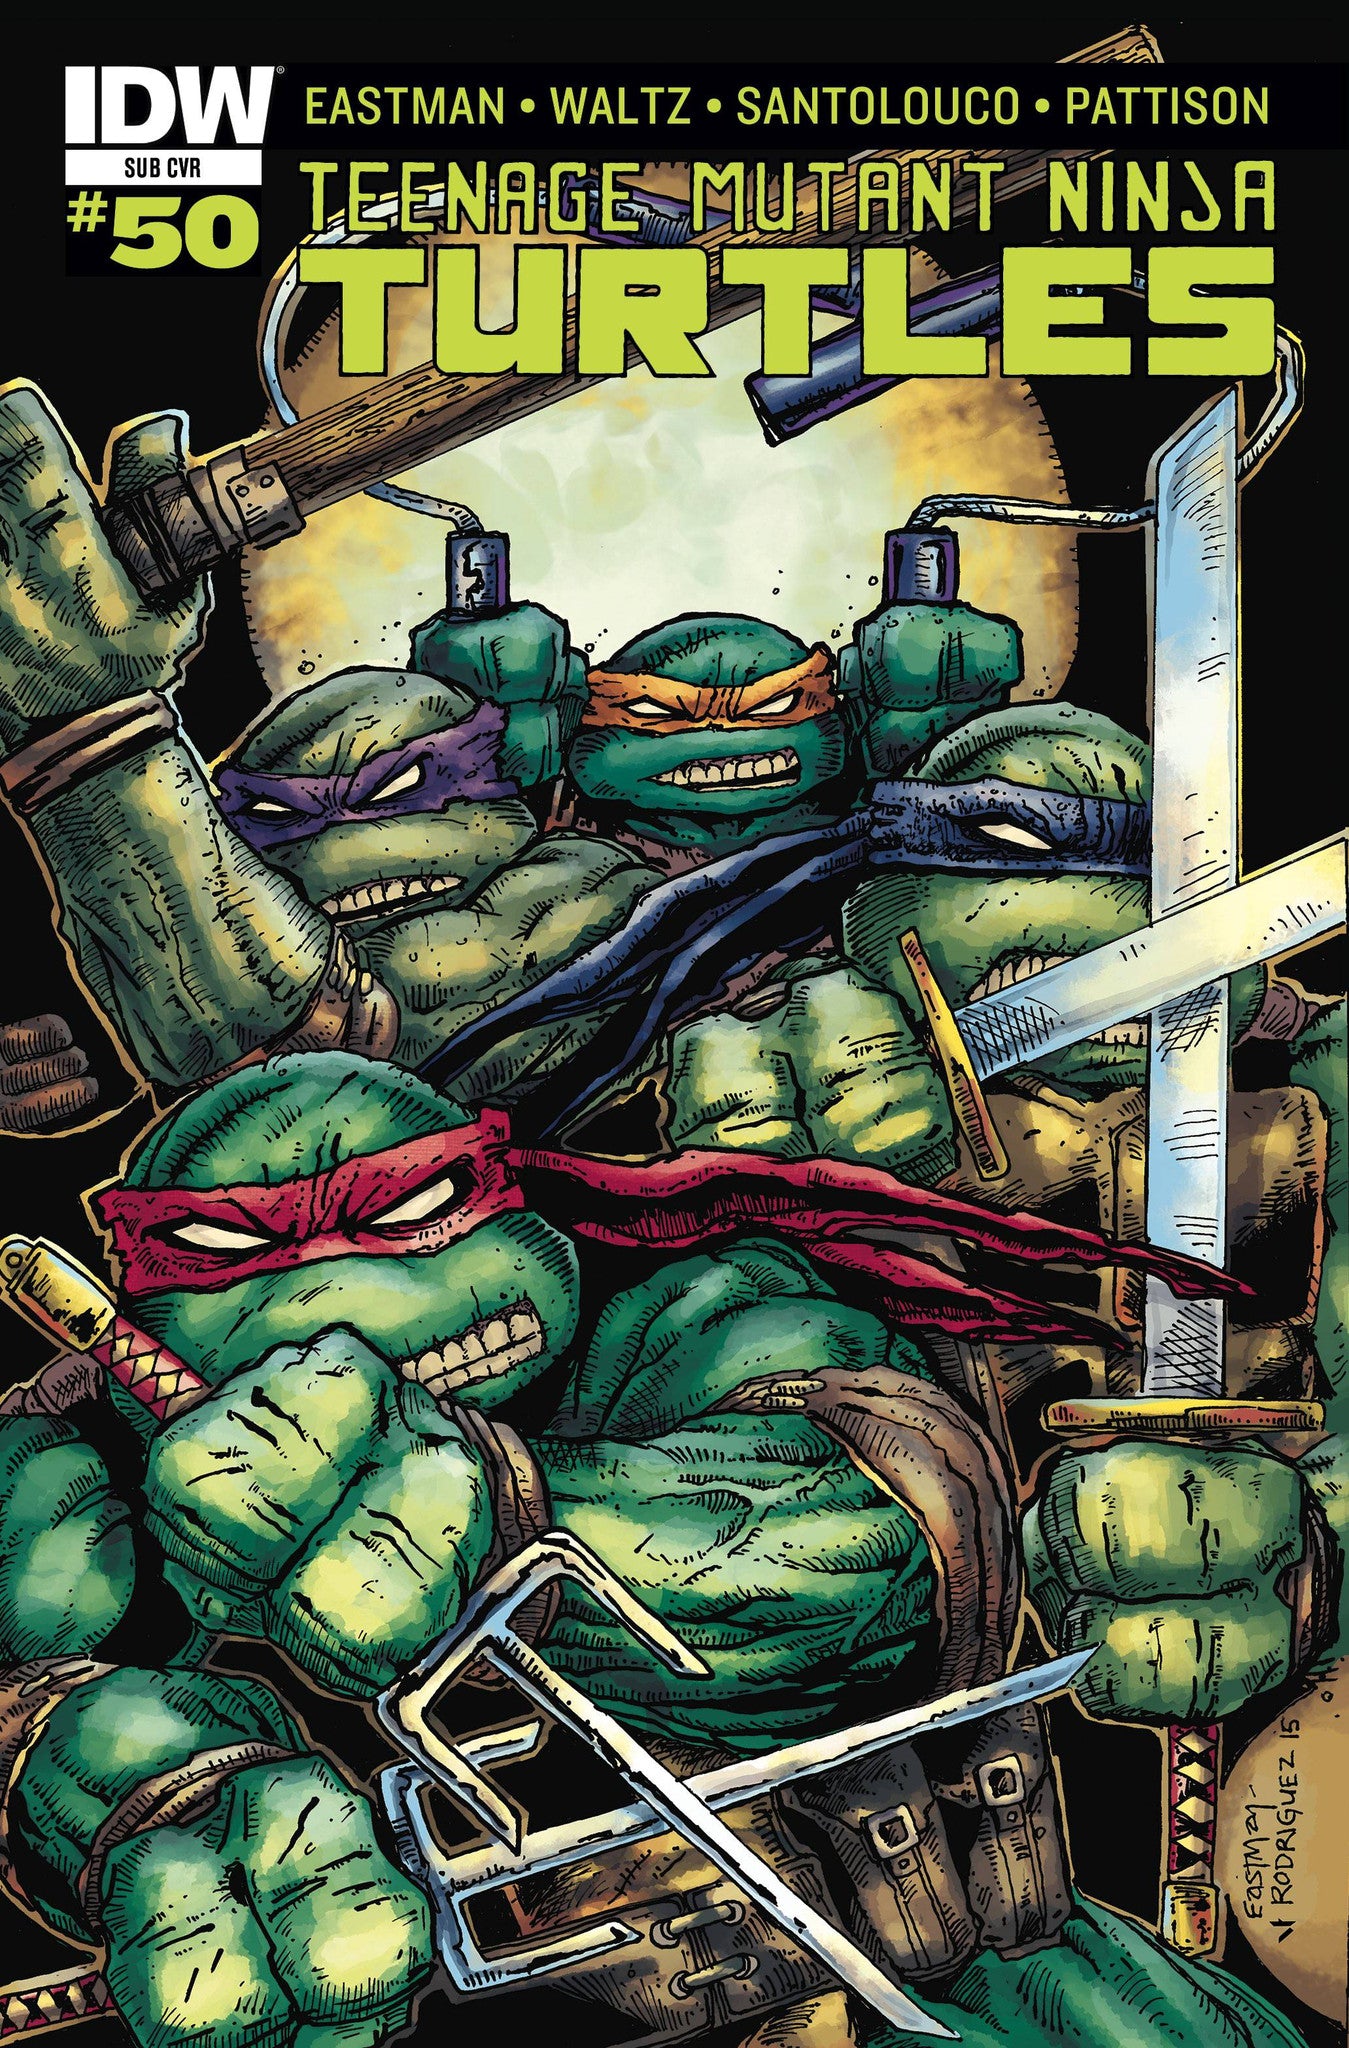 Teenage Mutant Ninja Turtles (2011) #50 "Subscription" Variant